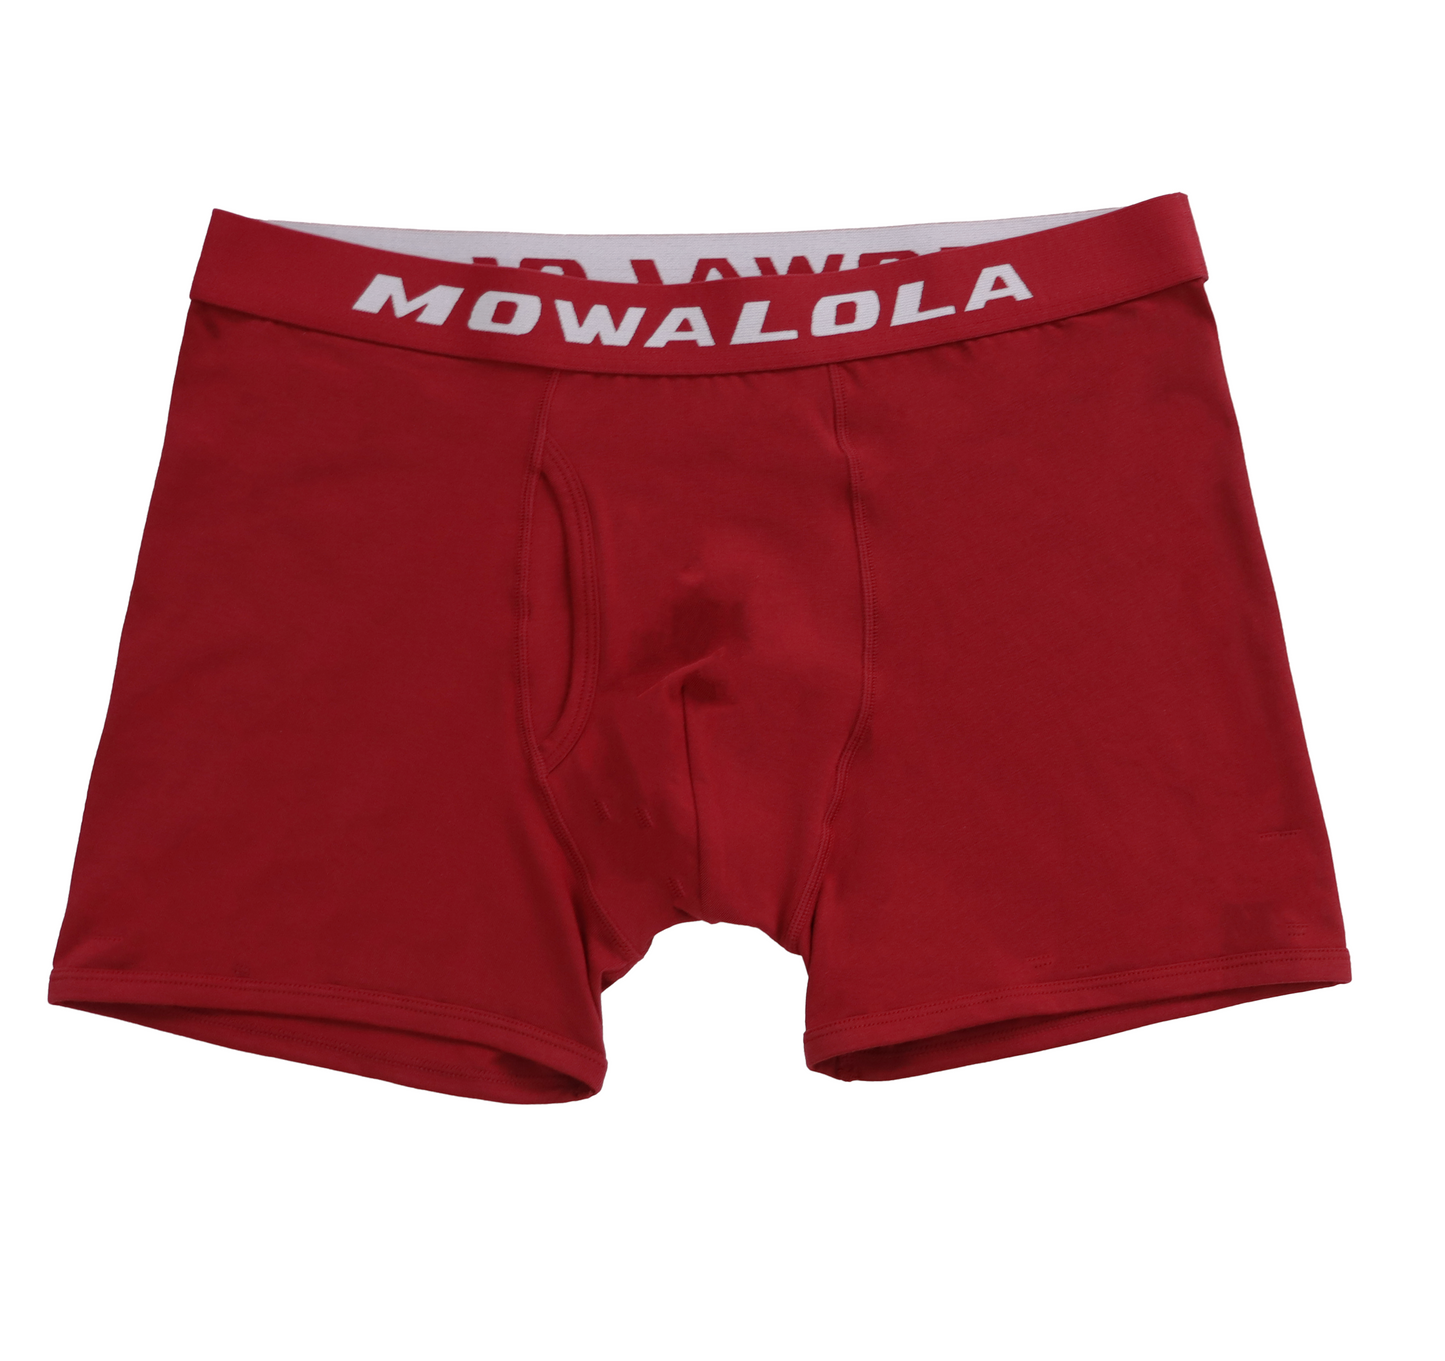 Boxer Mowalola